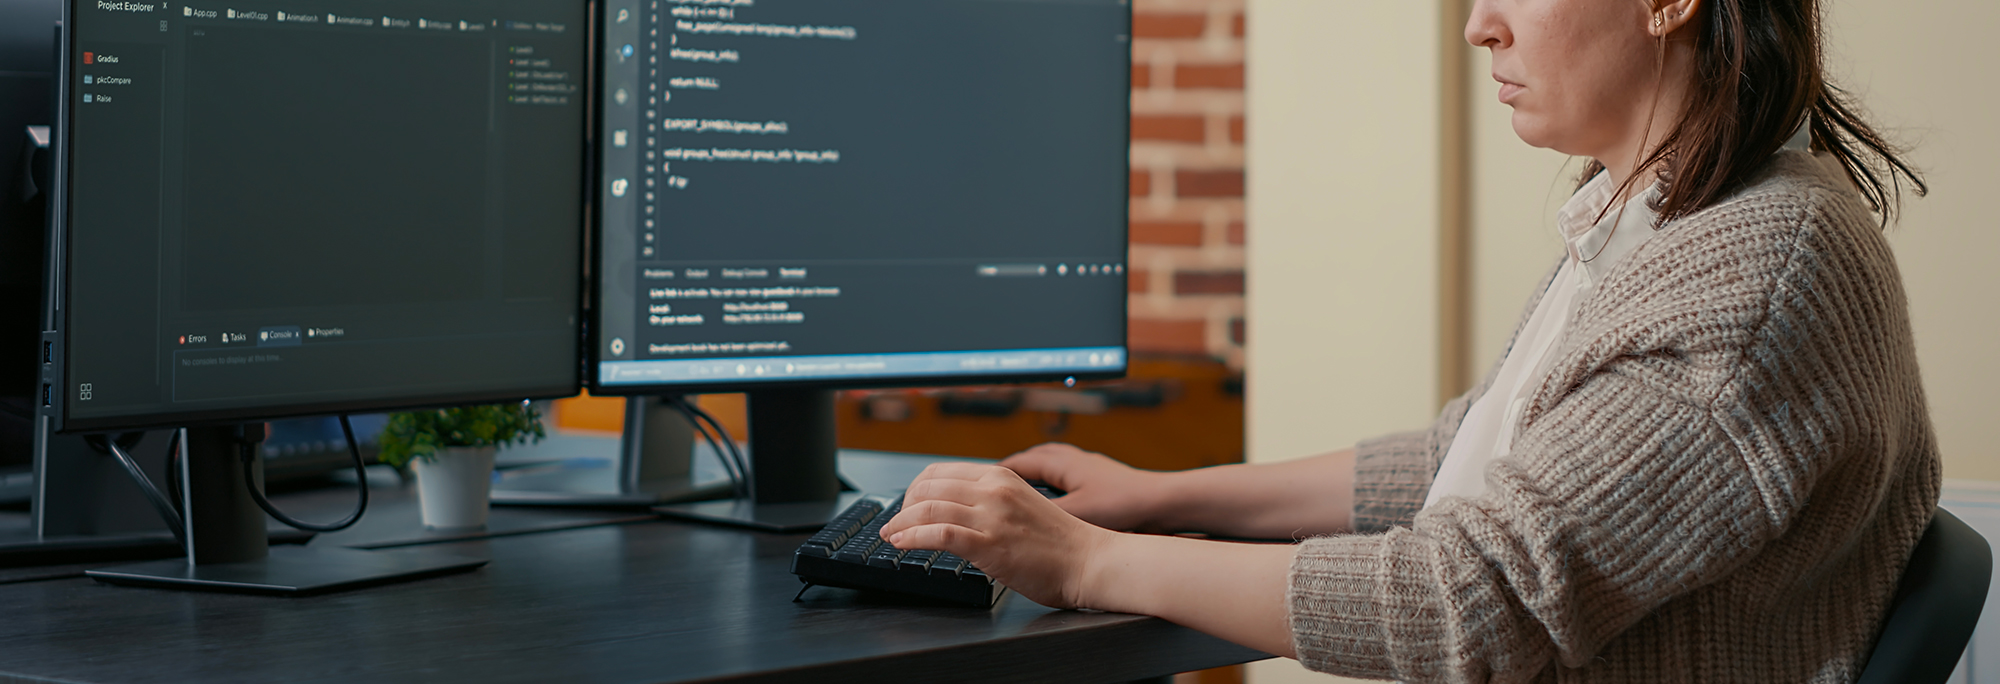 Une femme est assis à un bureau et fait face à deux écrans d'ordinateur sur lequel on voit des lignes de code informatique.